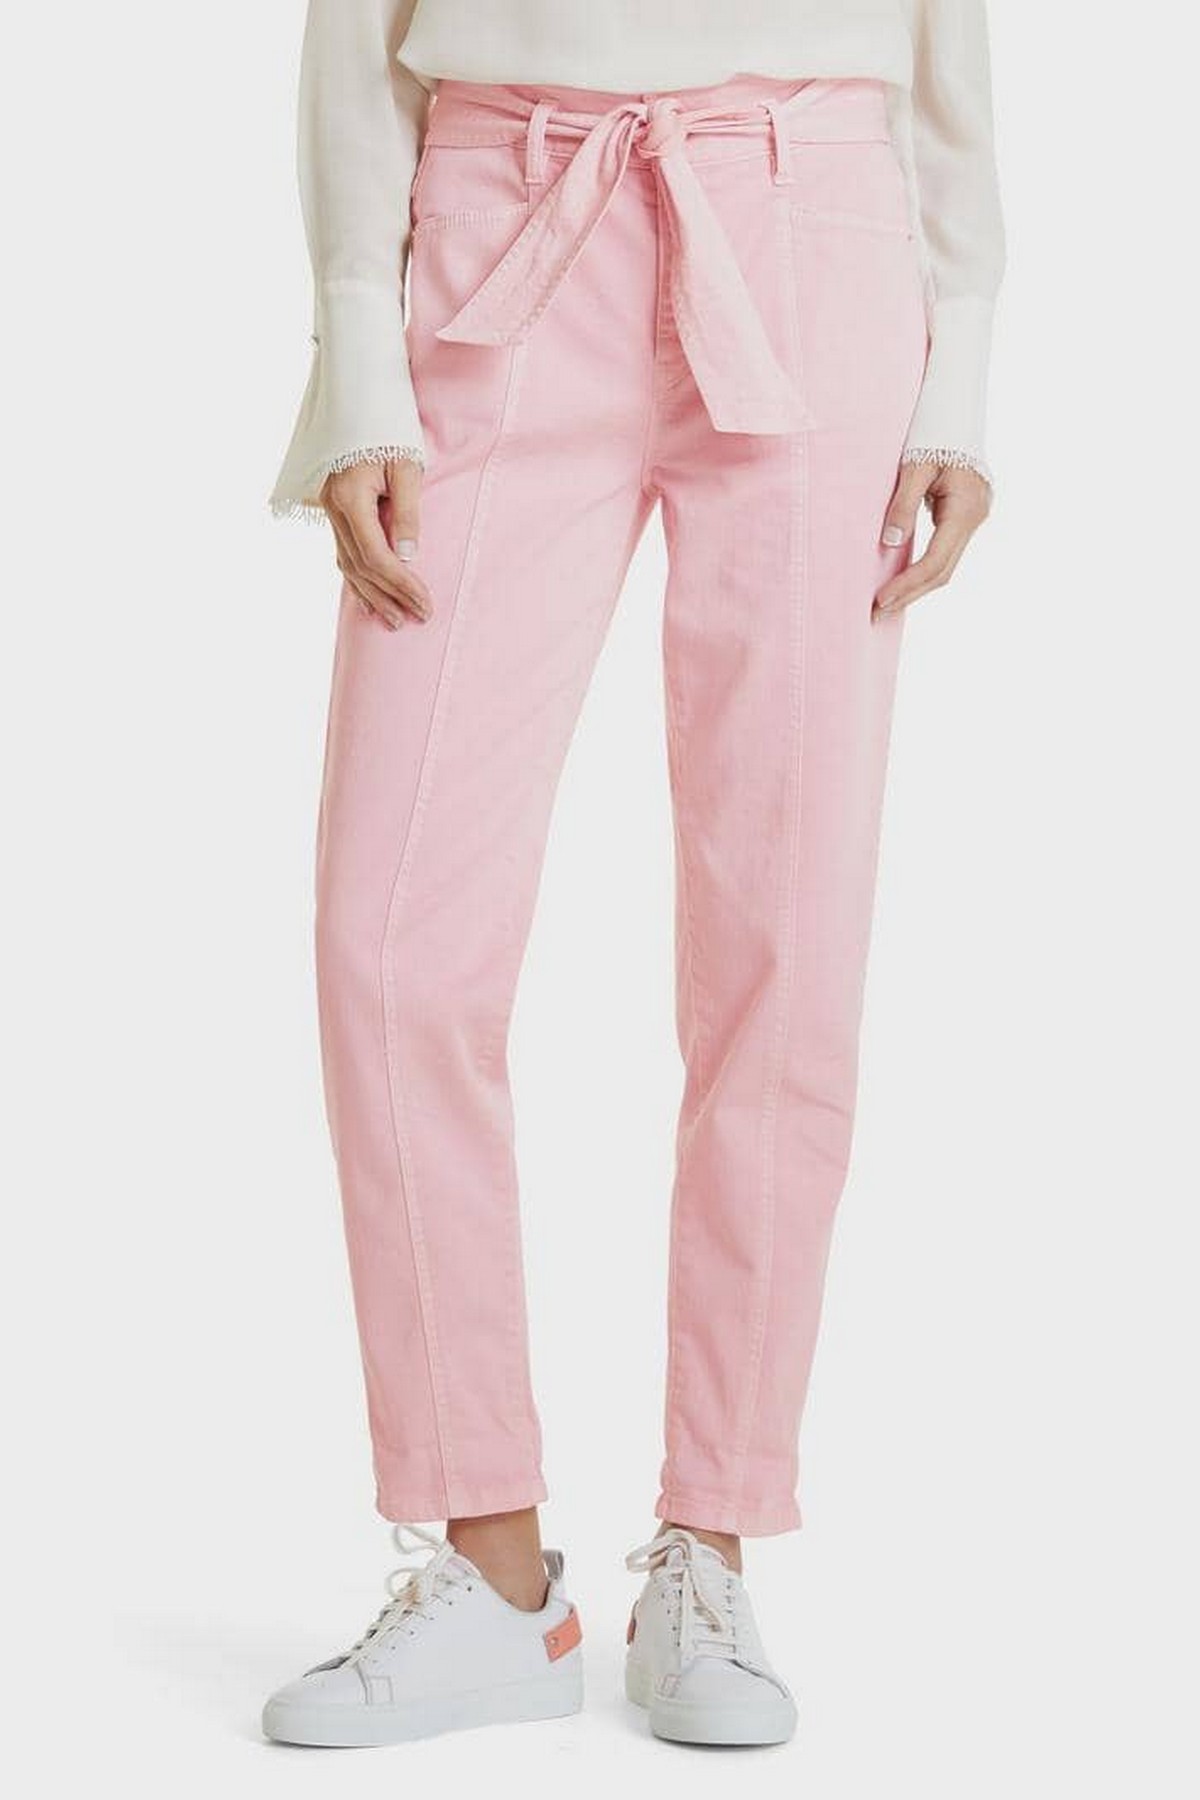 Marc Cain - SC 82.06 D60 219 - Jeans wijd met strikceintuur roze